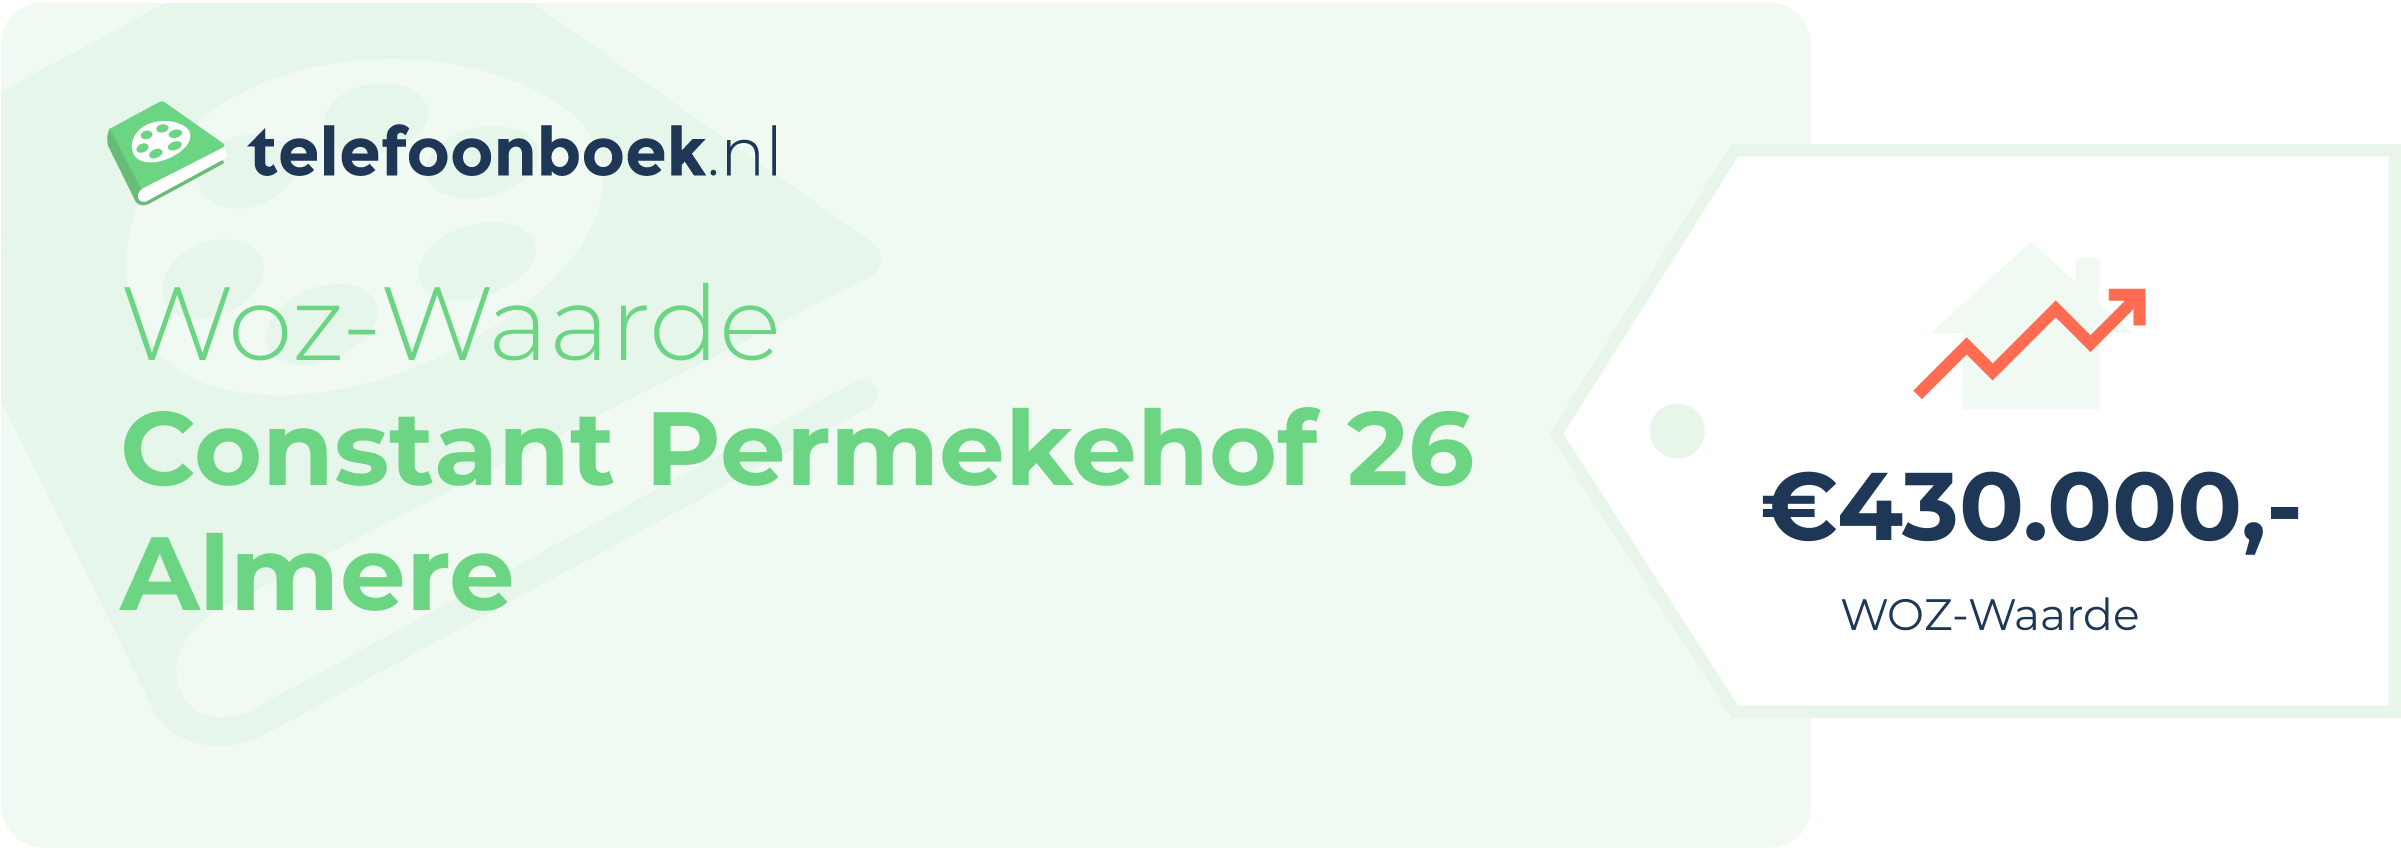 WOZ-waarde Constant Permekehof 26 Almere